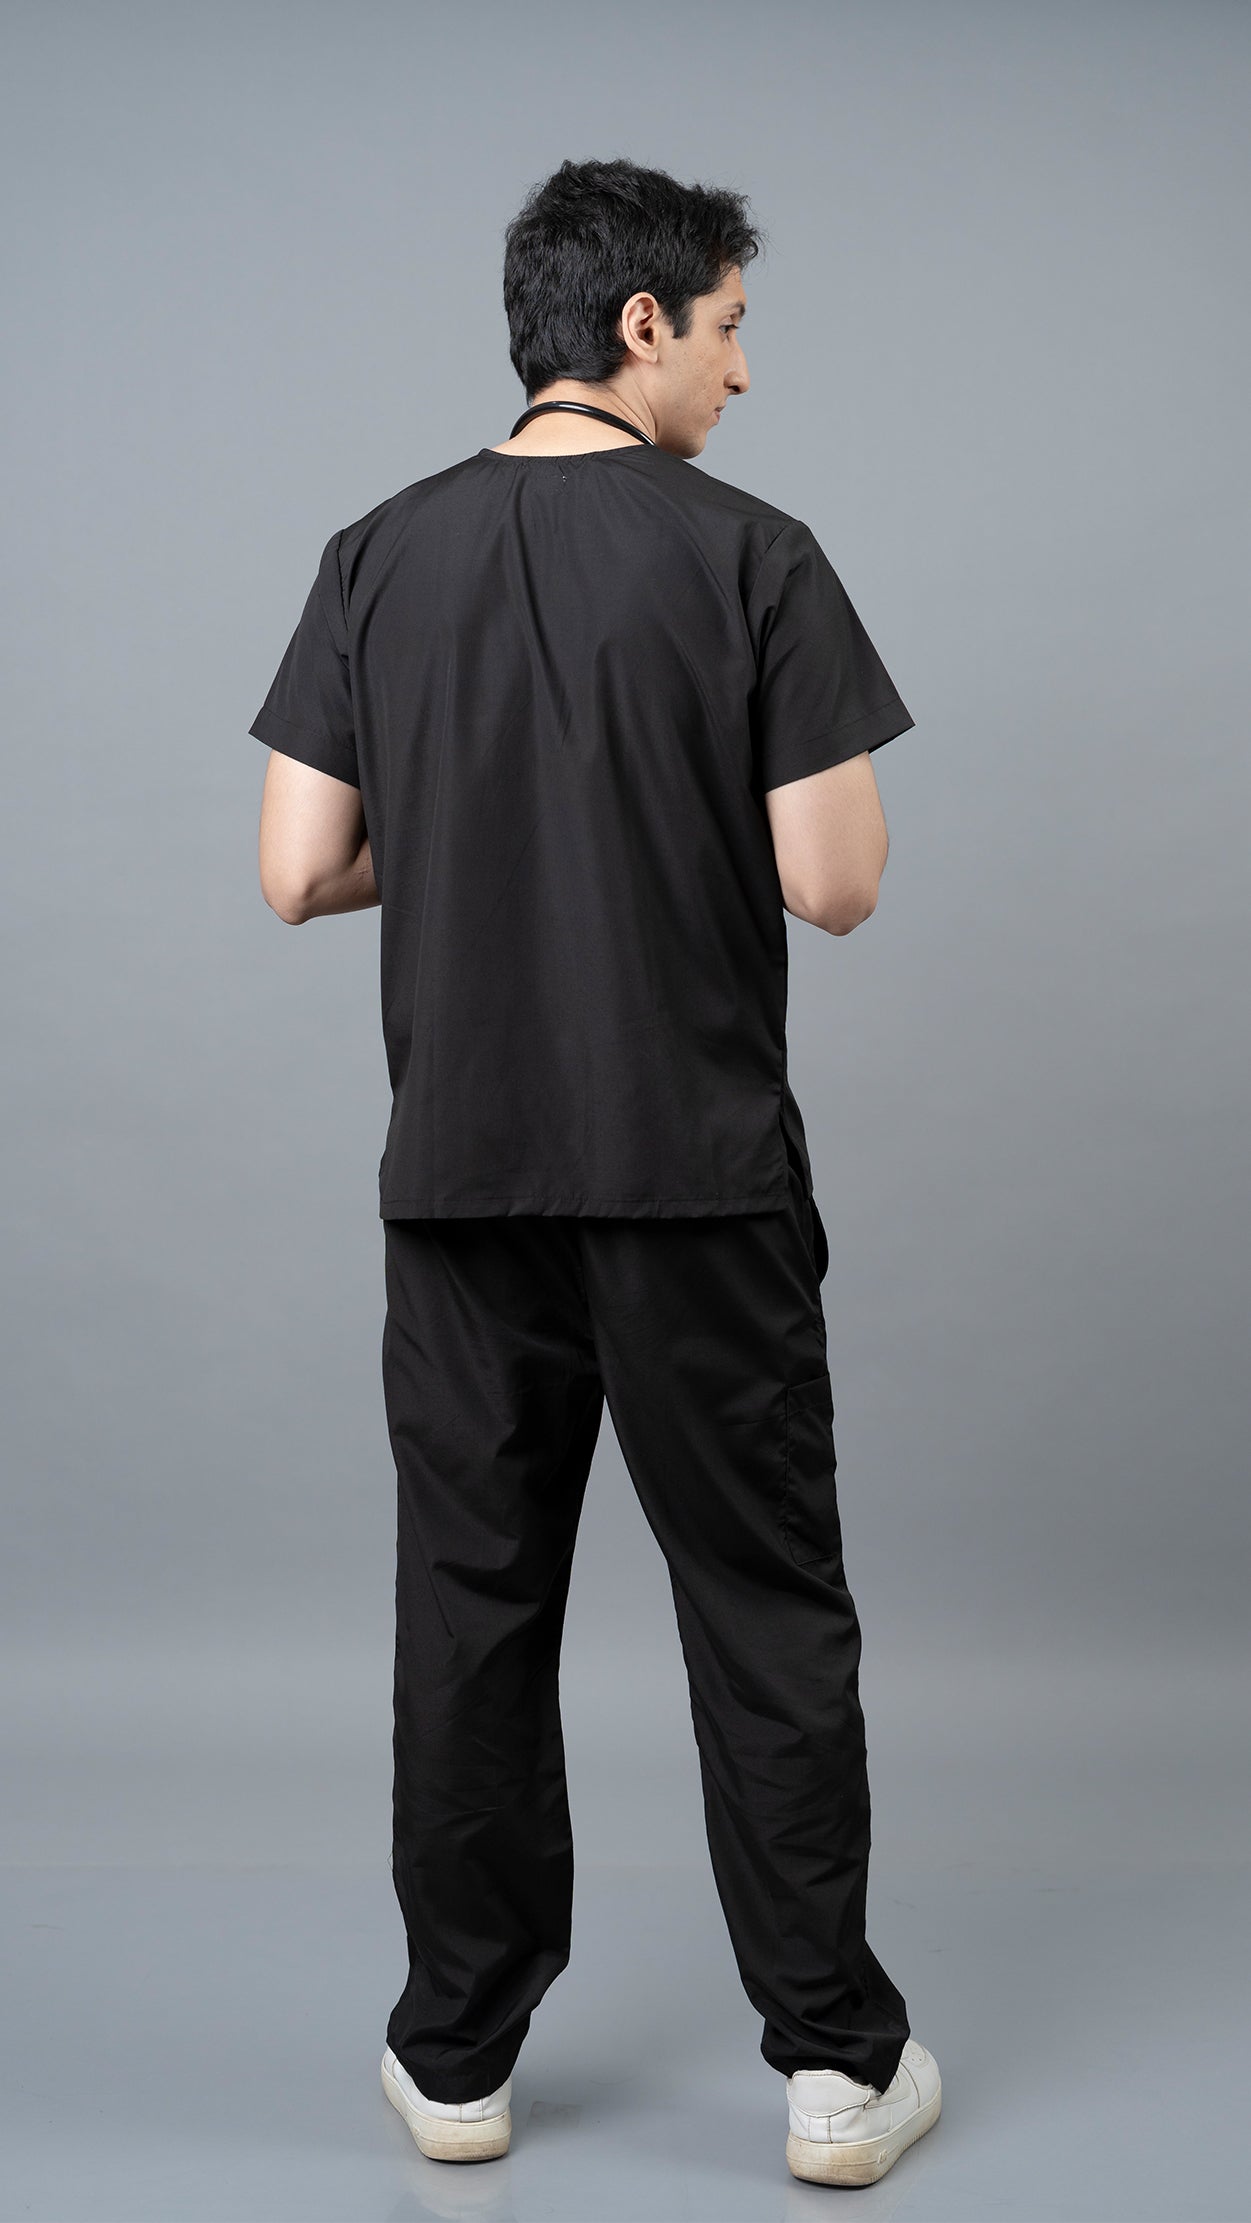 Vastramedwear Medical Scrub Suit for Doctors Men Black